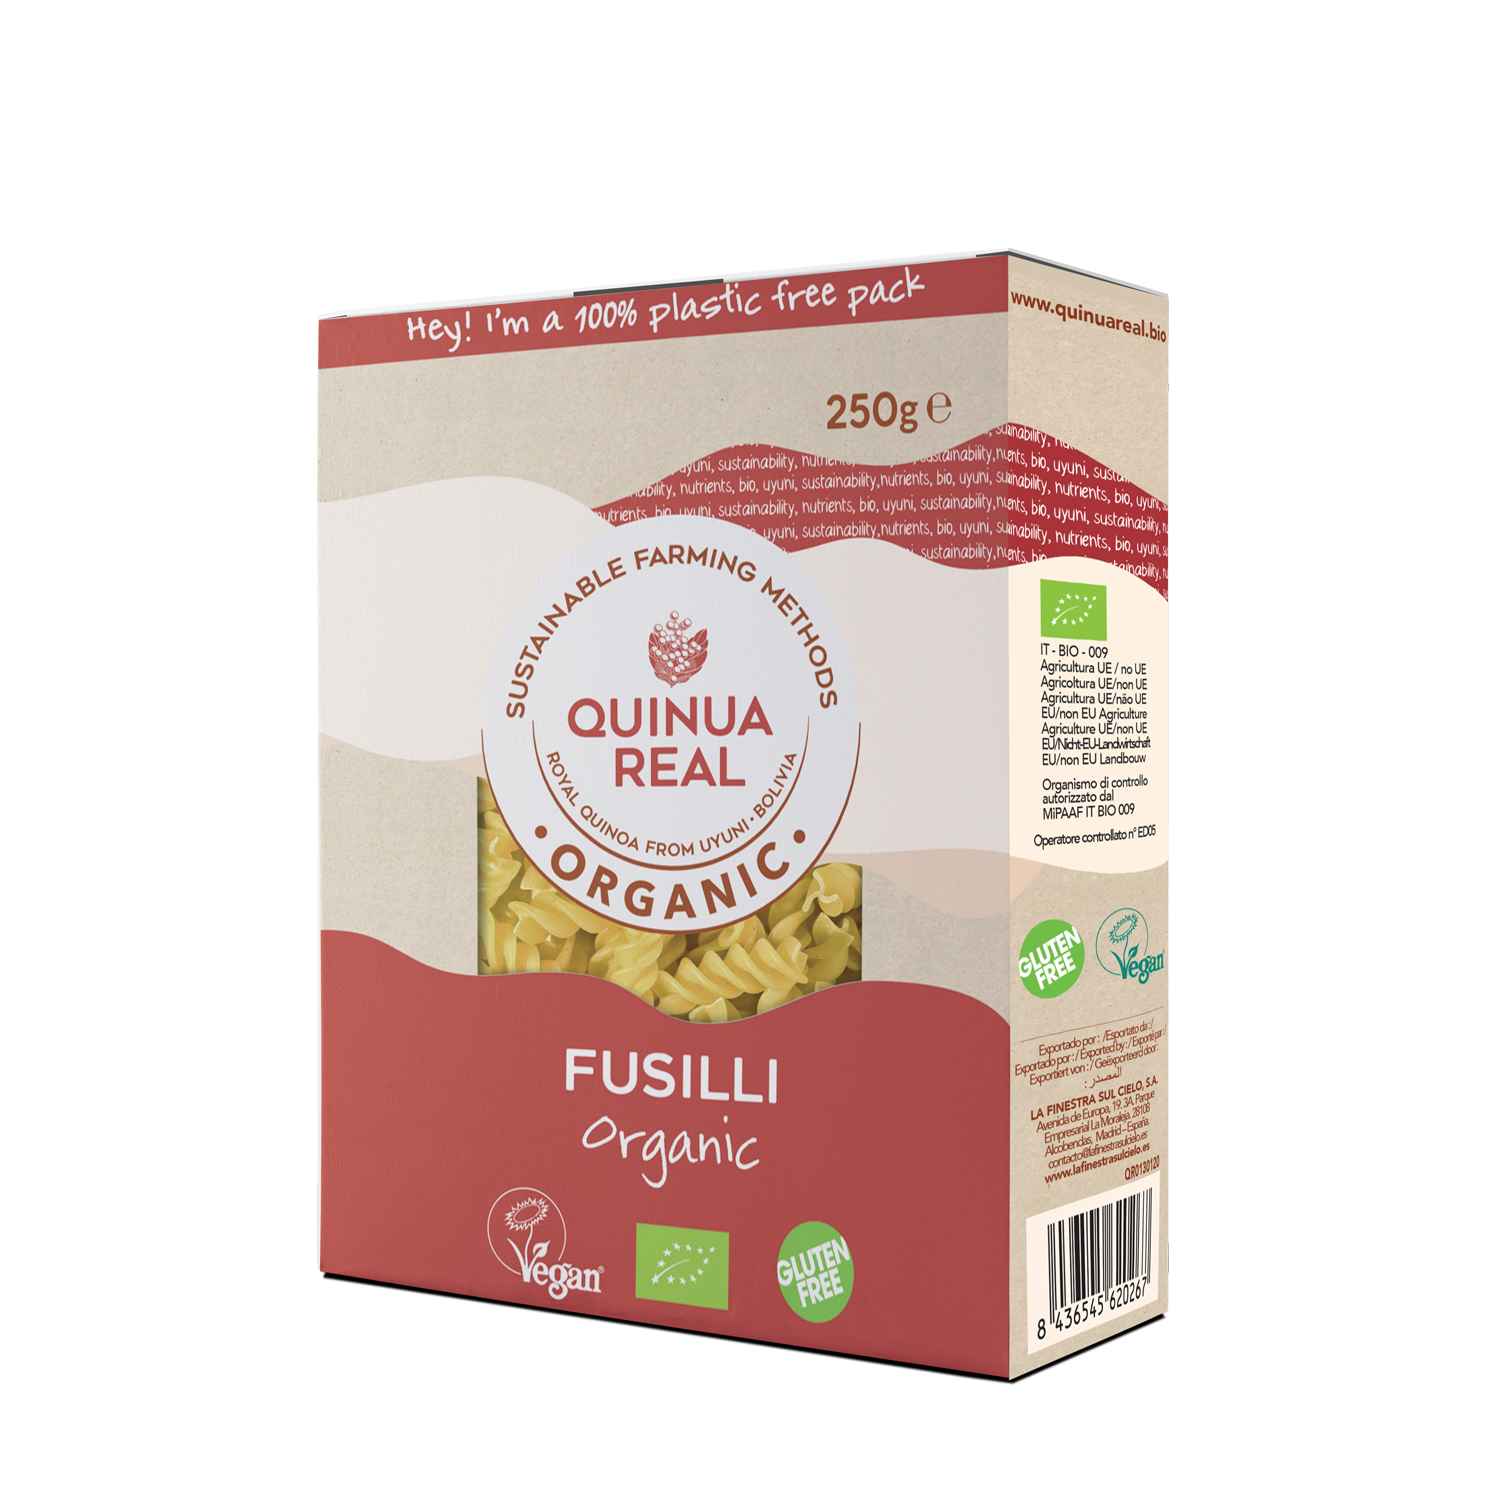 https://www.quinuareal.bio/quinua/fotos/fusilli-de-quinoa-real-y-arroz-bio-1595656732.png